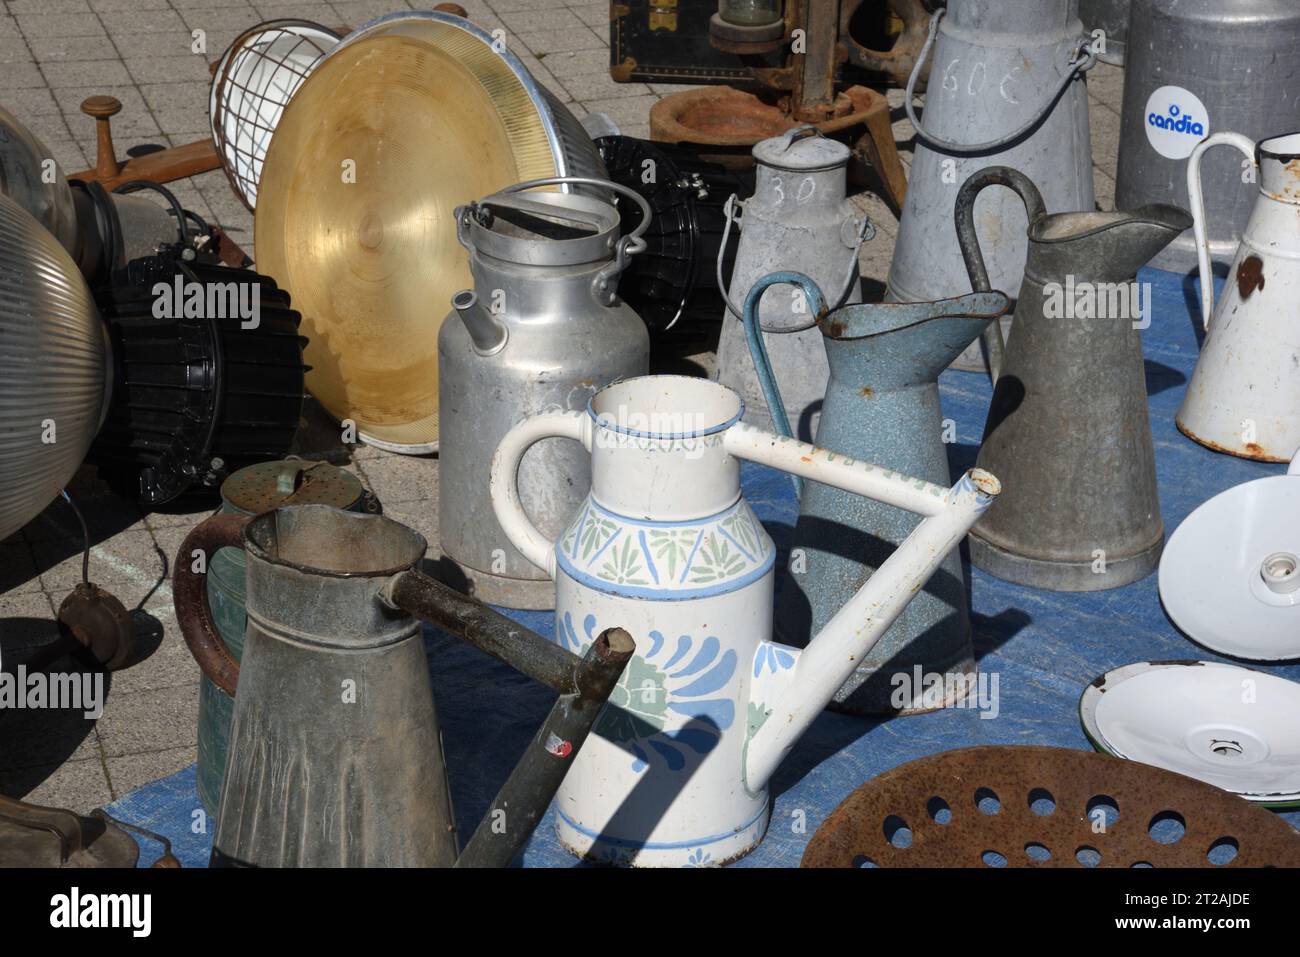 Vintage-, Sammel- oder Sammlerbewässerungsdosen und Milchkannen am Marktstand, Antiquitätenmarkt oder Brocante Provence Frankreich Stockfoto